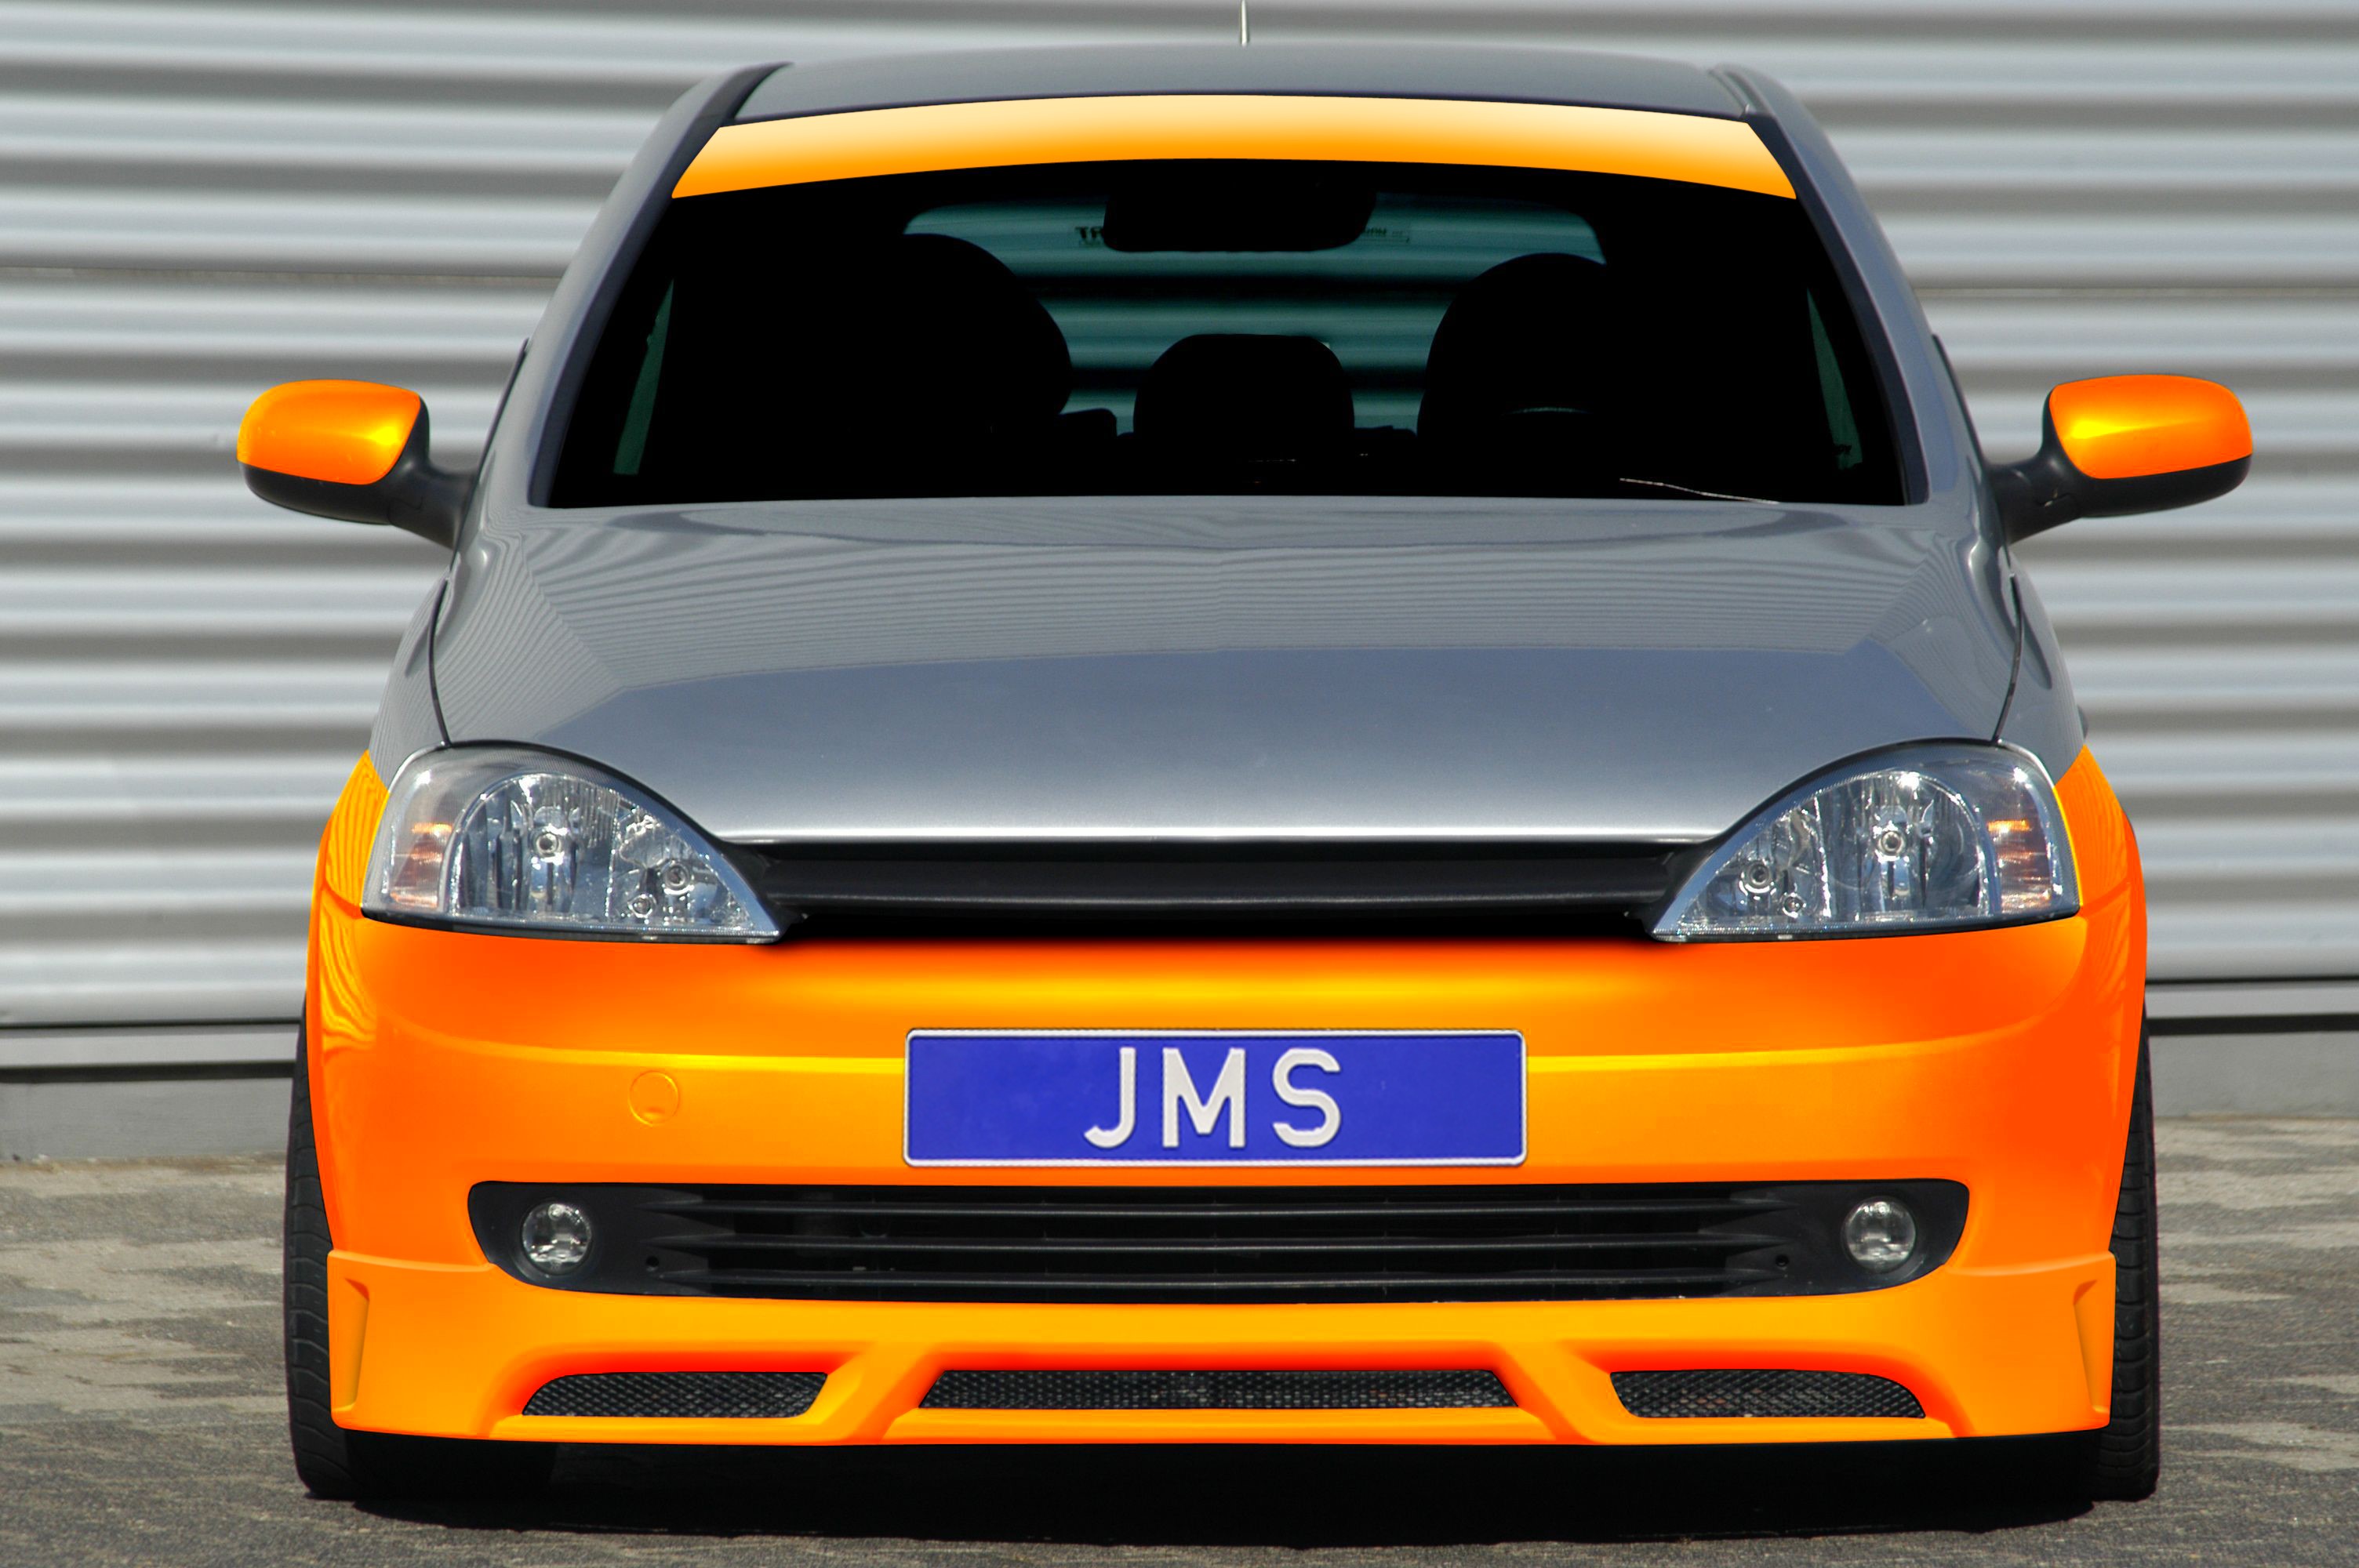 JMS NEWS Corsa C Racelook, JMS - Fahrzeugteile GmbH, Story - PresseBox